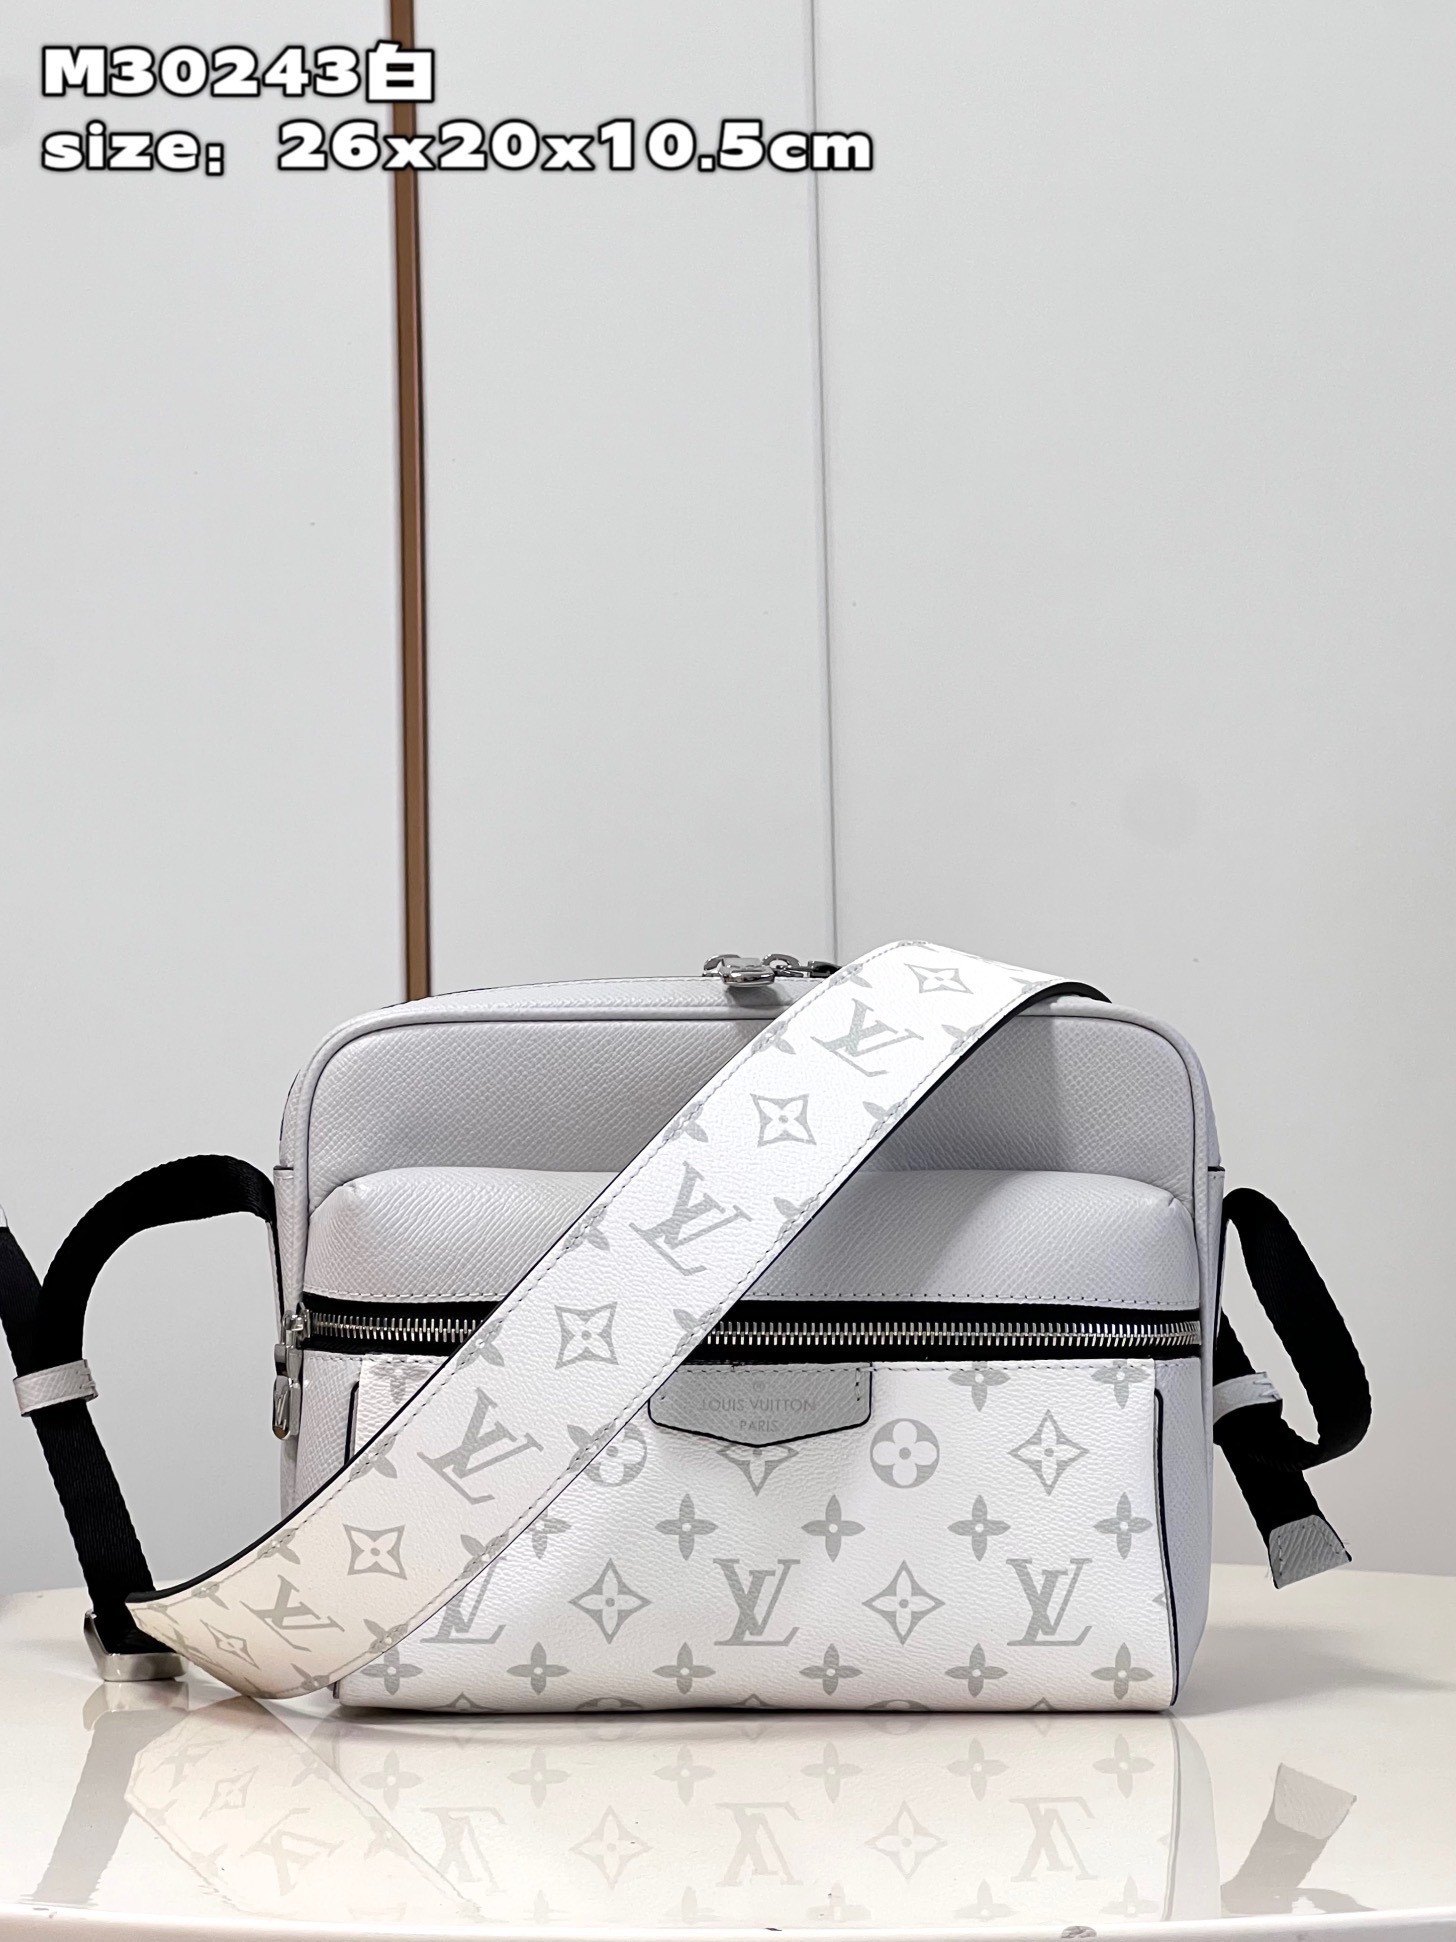 Túi xách Louis Vuitton Siêu Cấp RLCLV2662